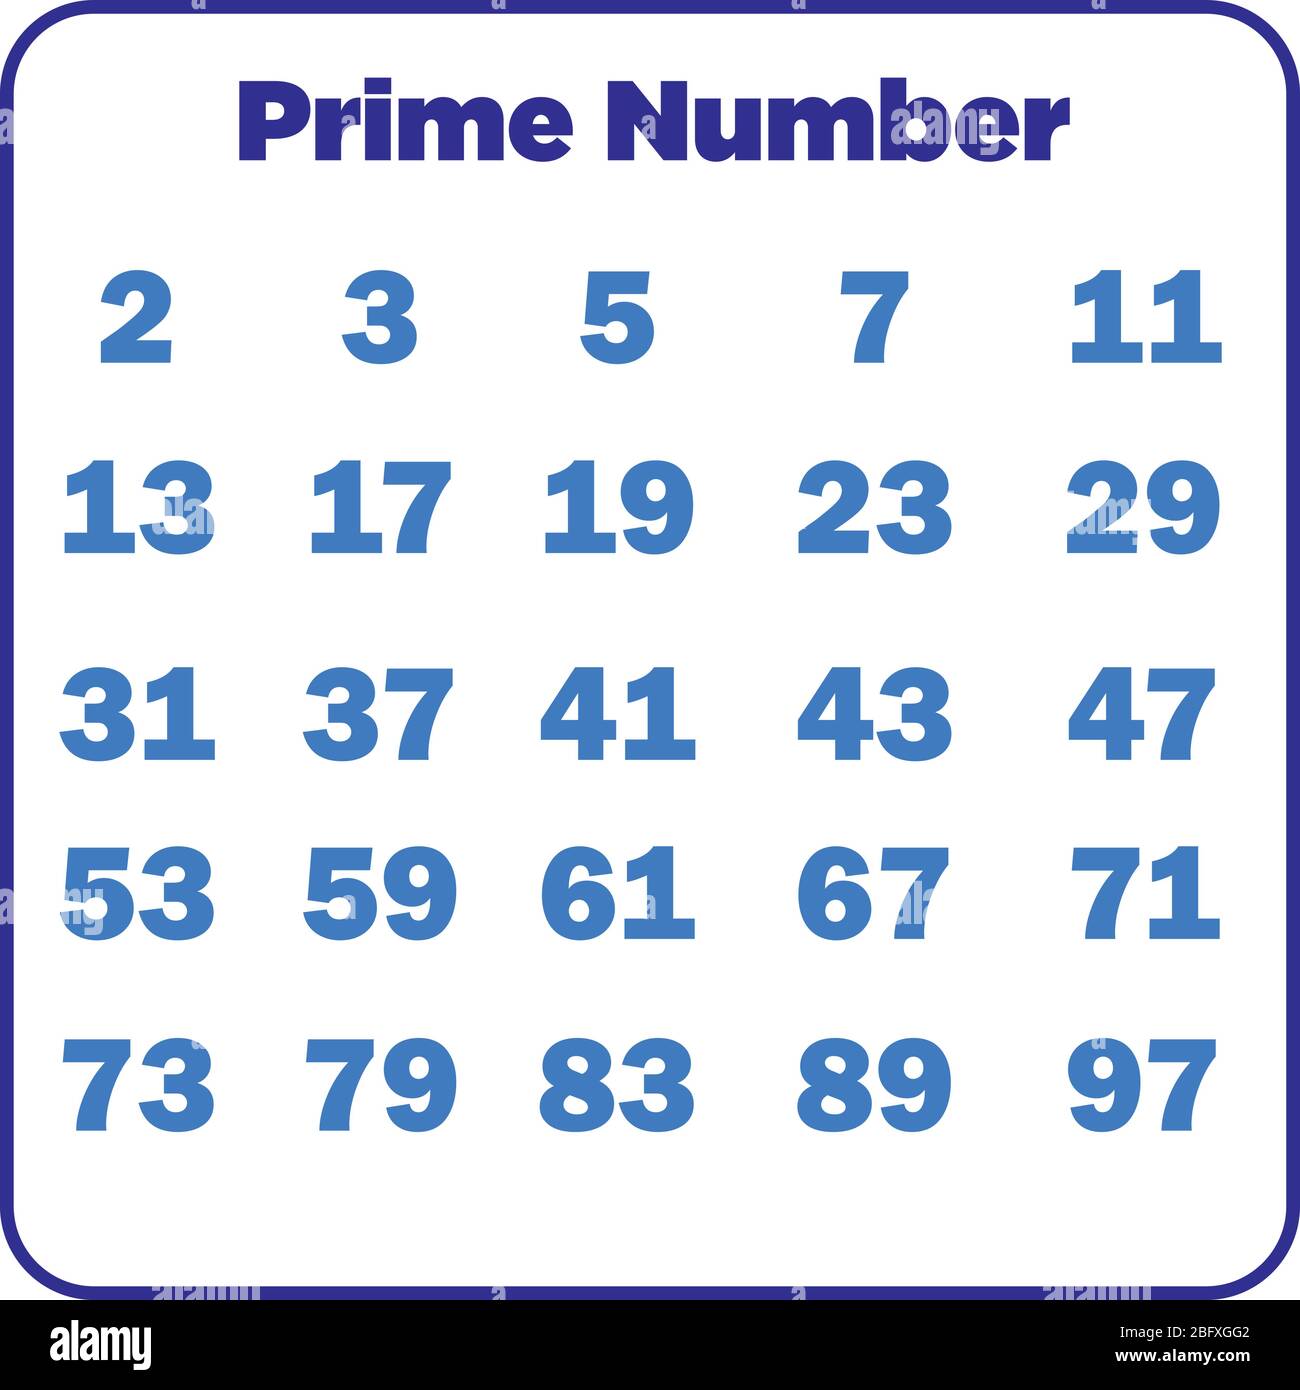 100 prime numbers list